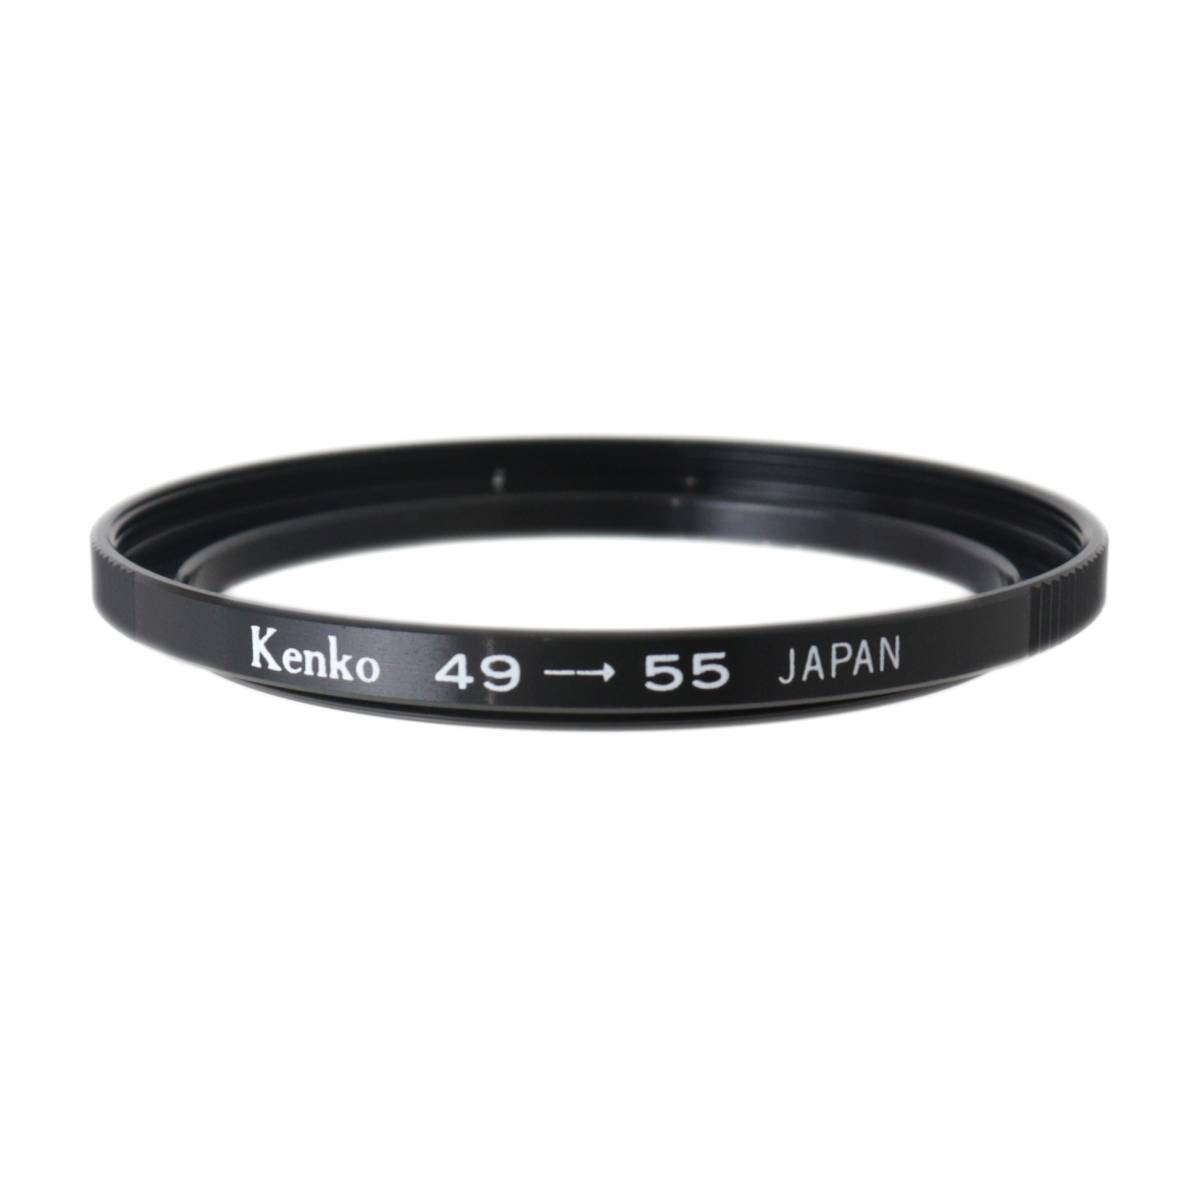 [ б/у ] Kenko Kenko повышающее резьбовое кольцо 49mm-55mm коробка NT прекрасный товар A разряд 